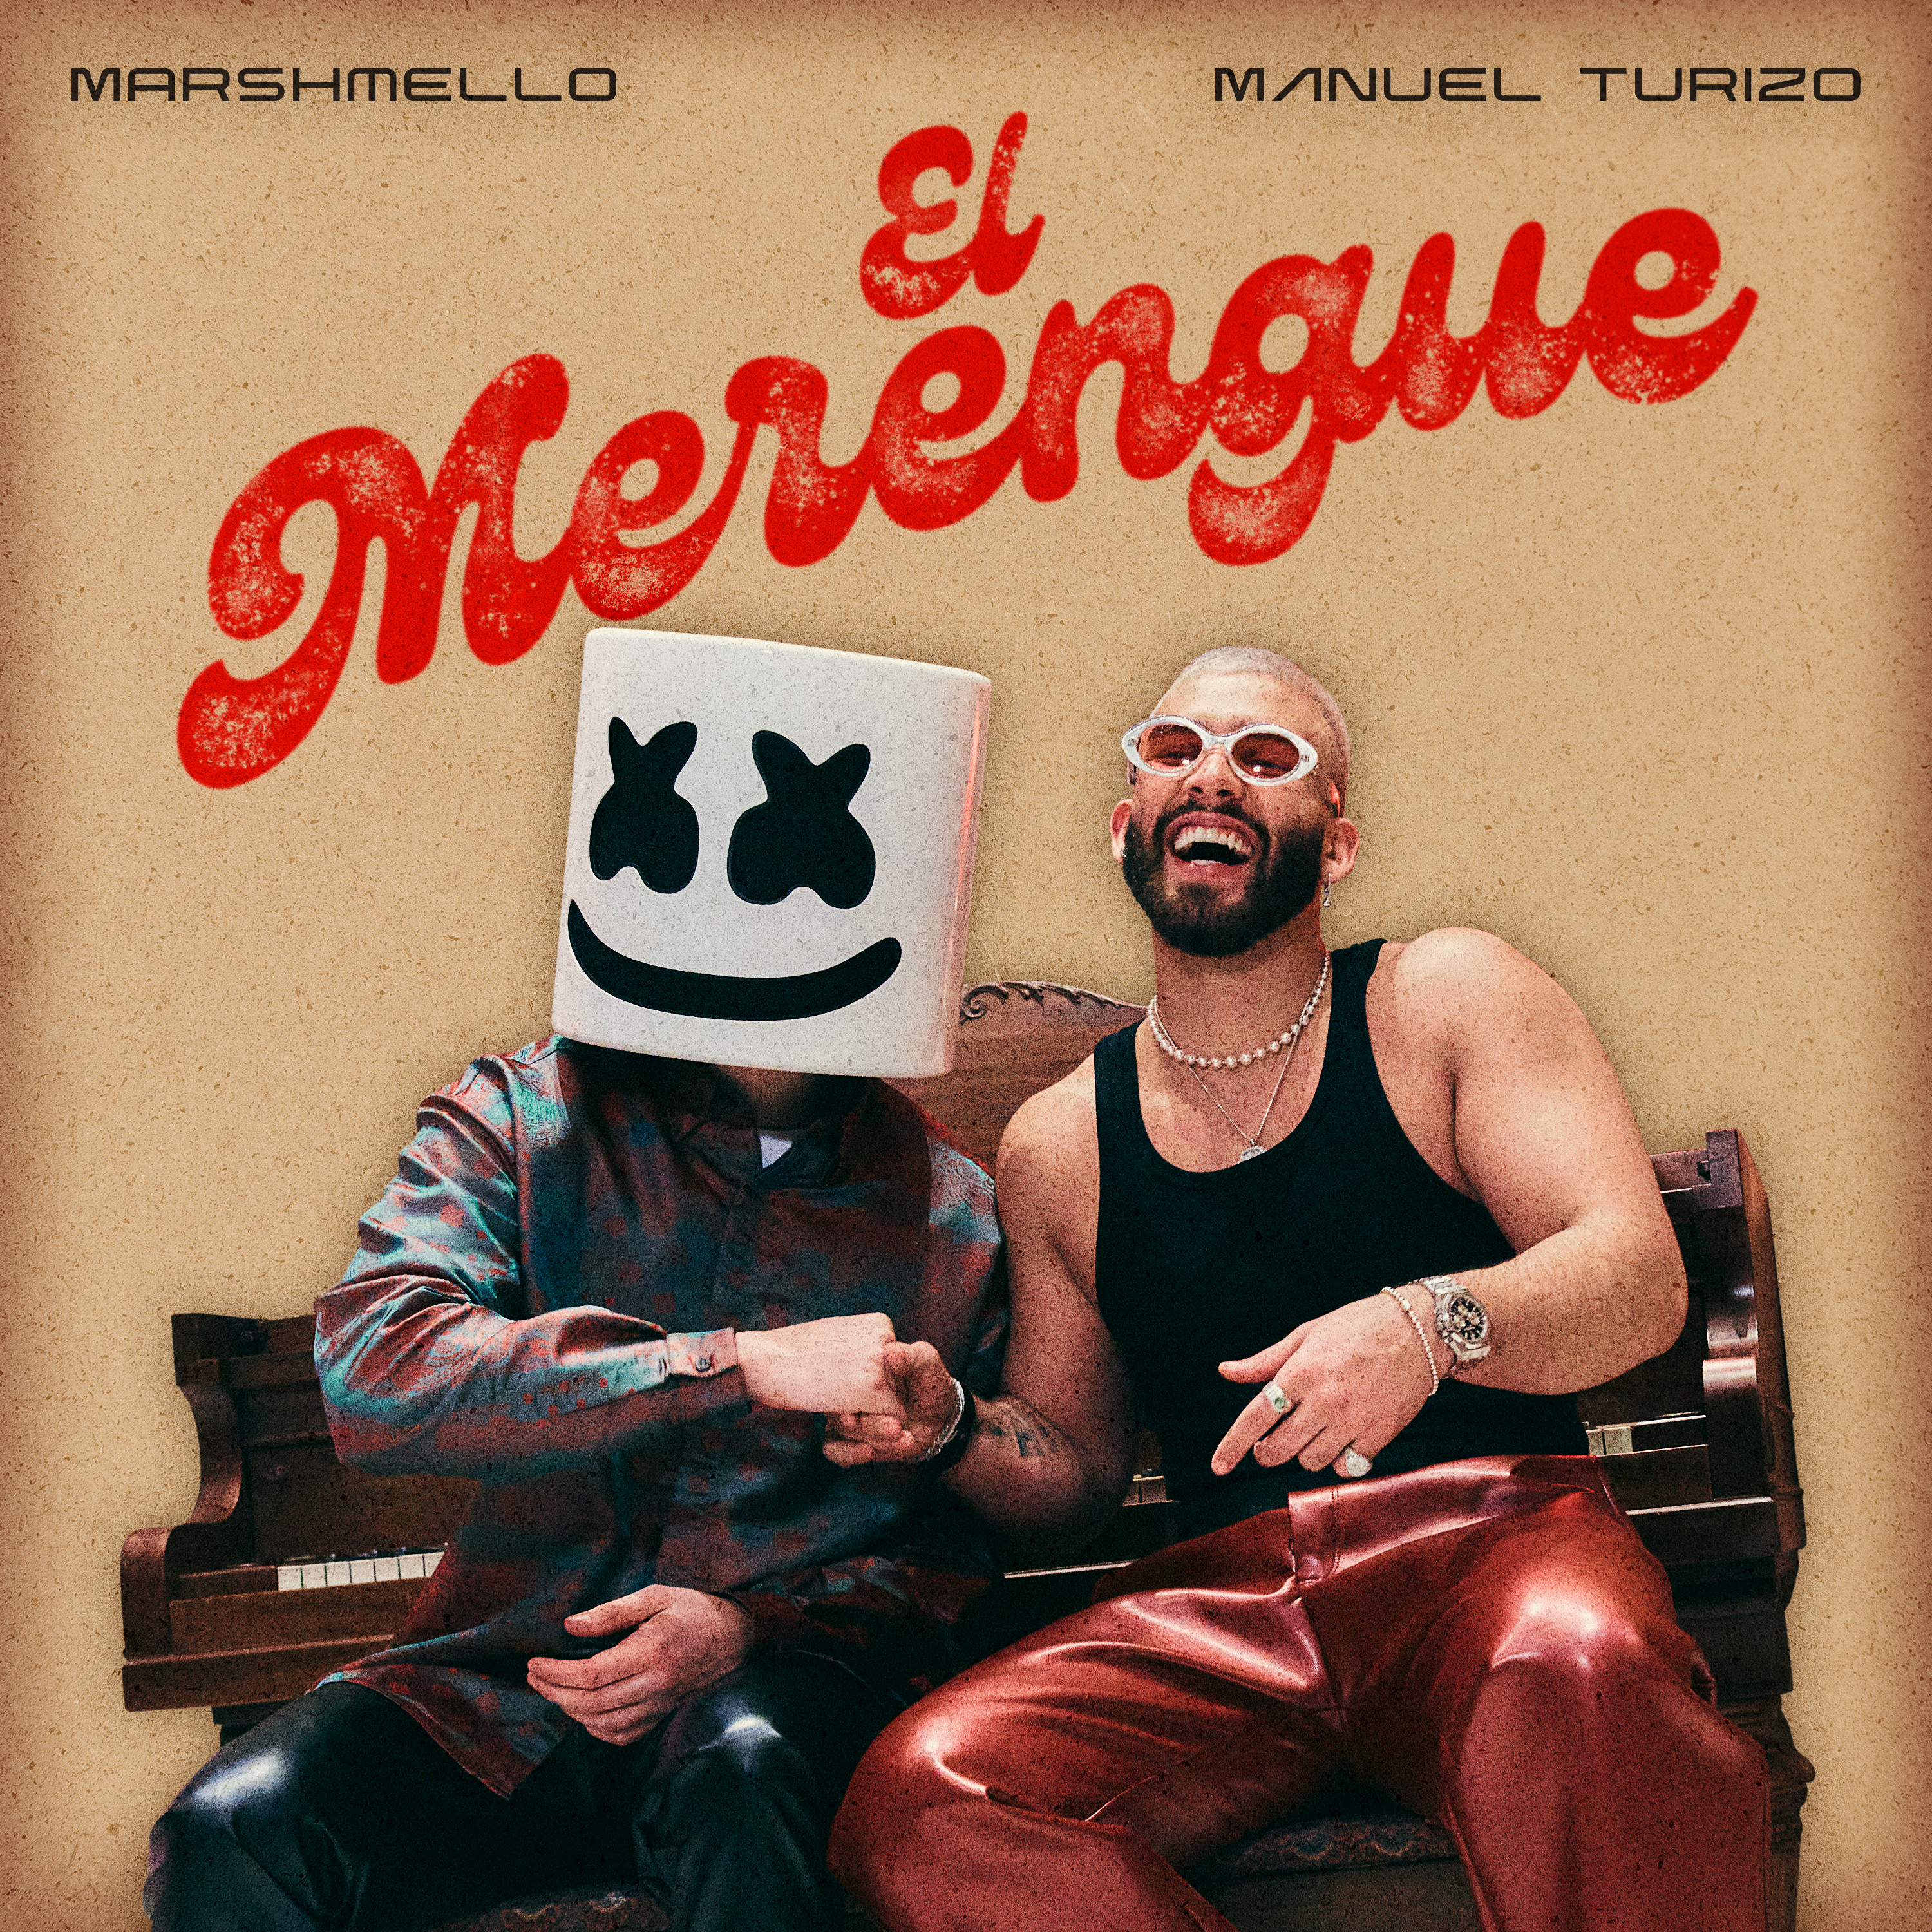 Manuel Turizo y Marshmello están de vuelta con su nueva cancion «El Merengue» – @marshmello